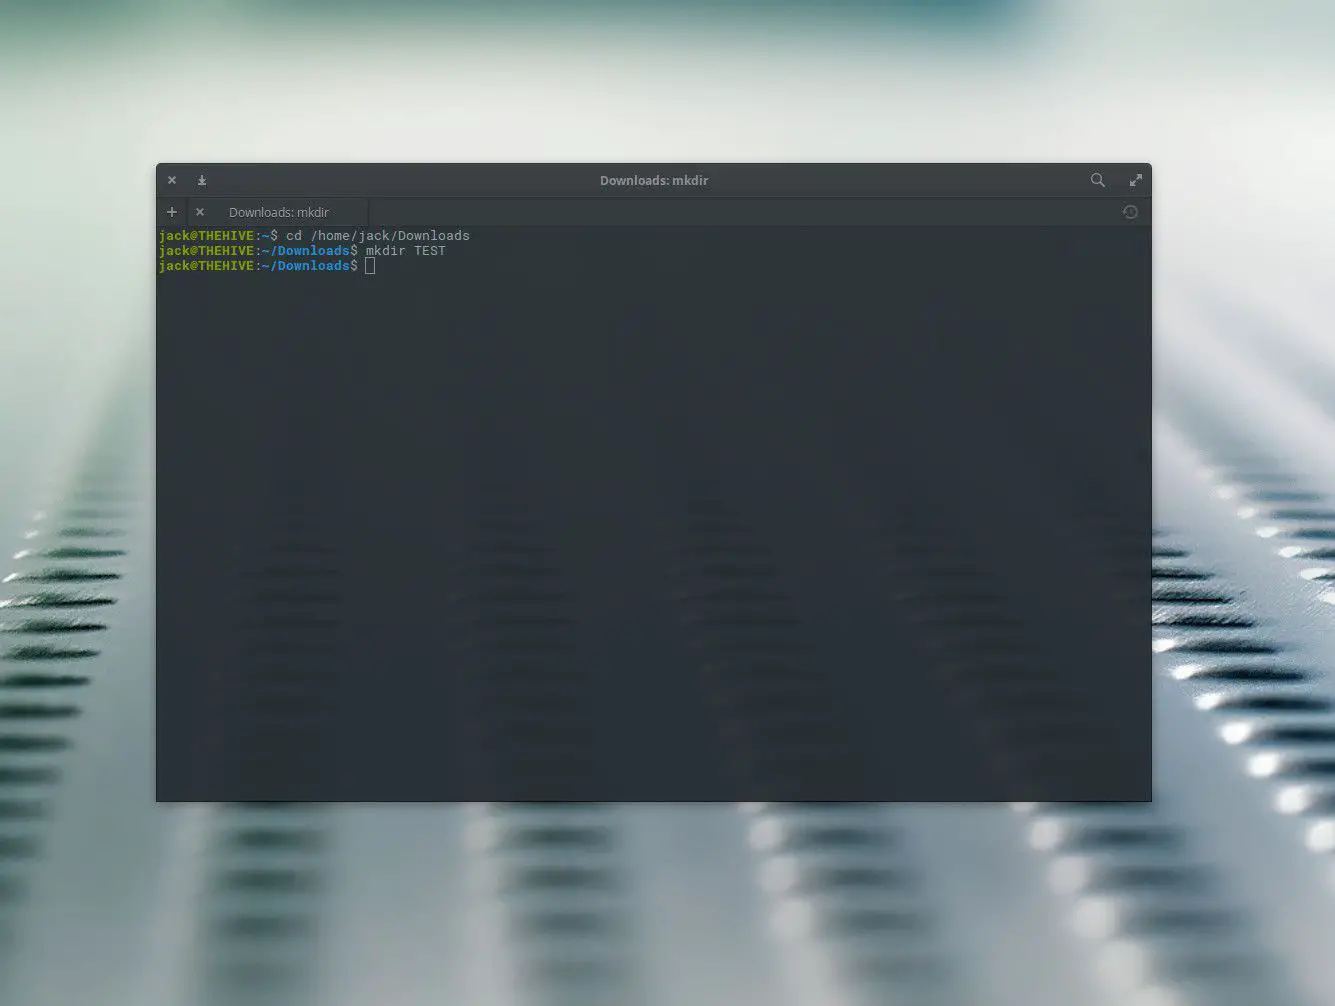 Captura de tela da criação de um novo diretório com o comando mkdir.